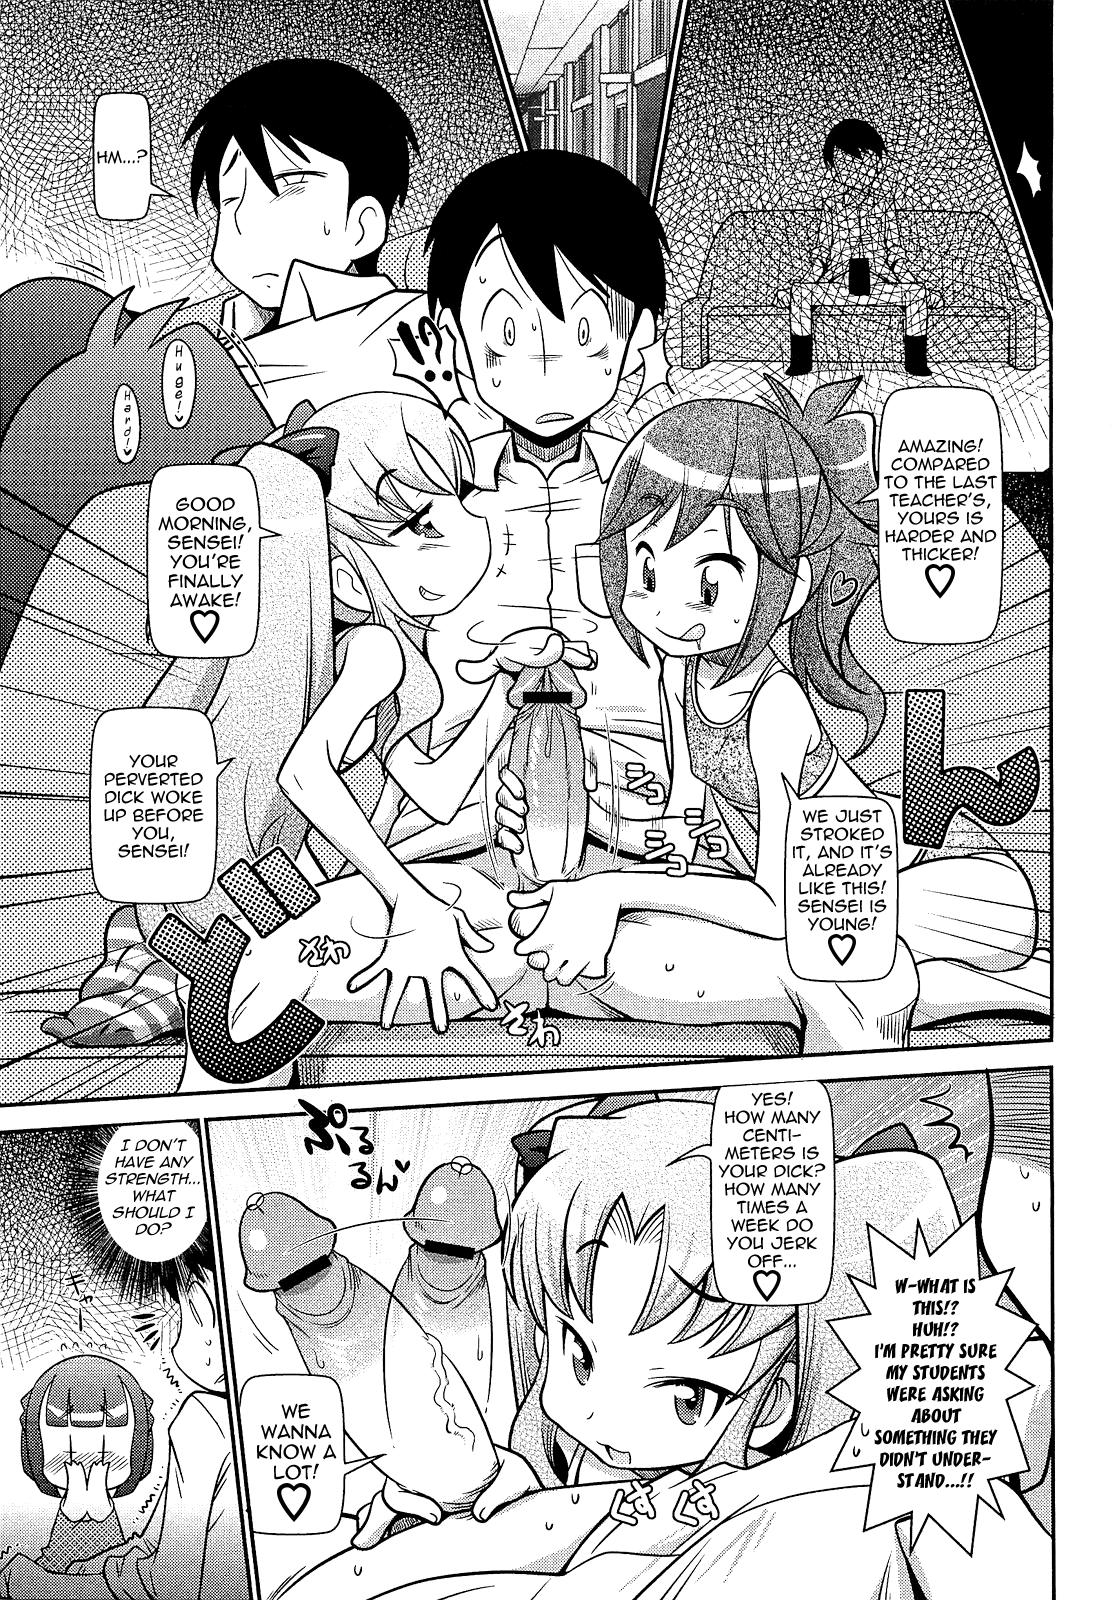 Putas Sensei! Wakarimasen! | Sensei! I Don't Understand! Dad - Page 3